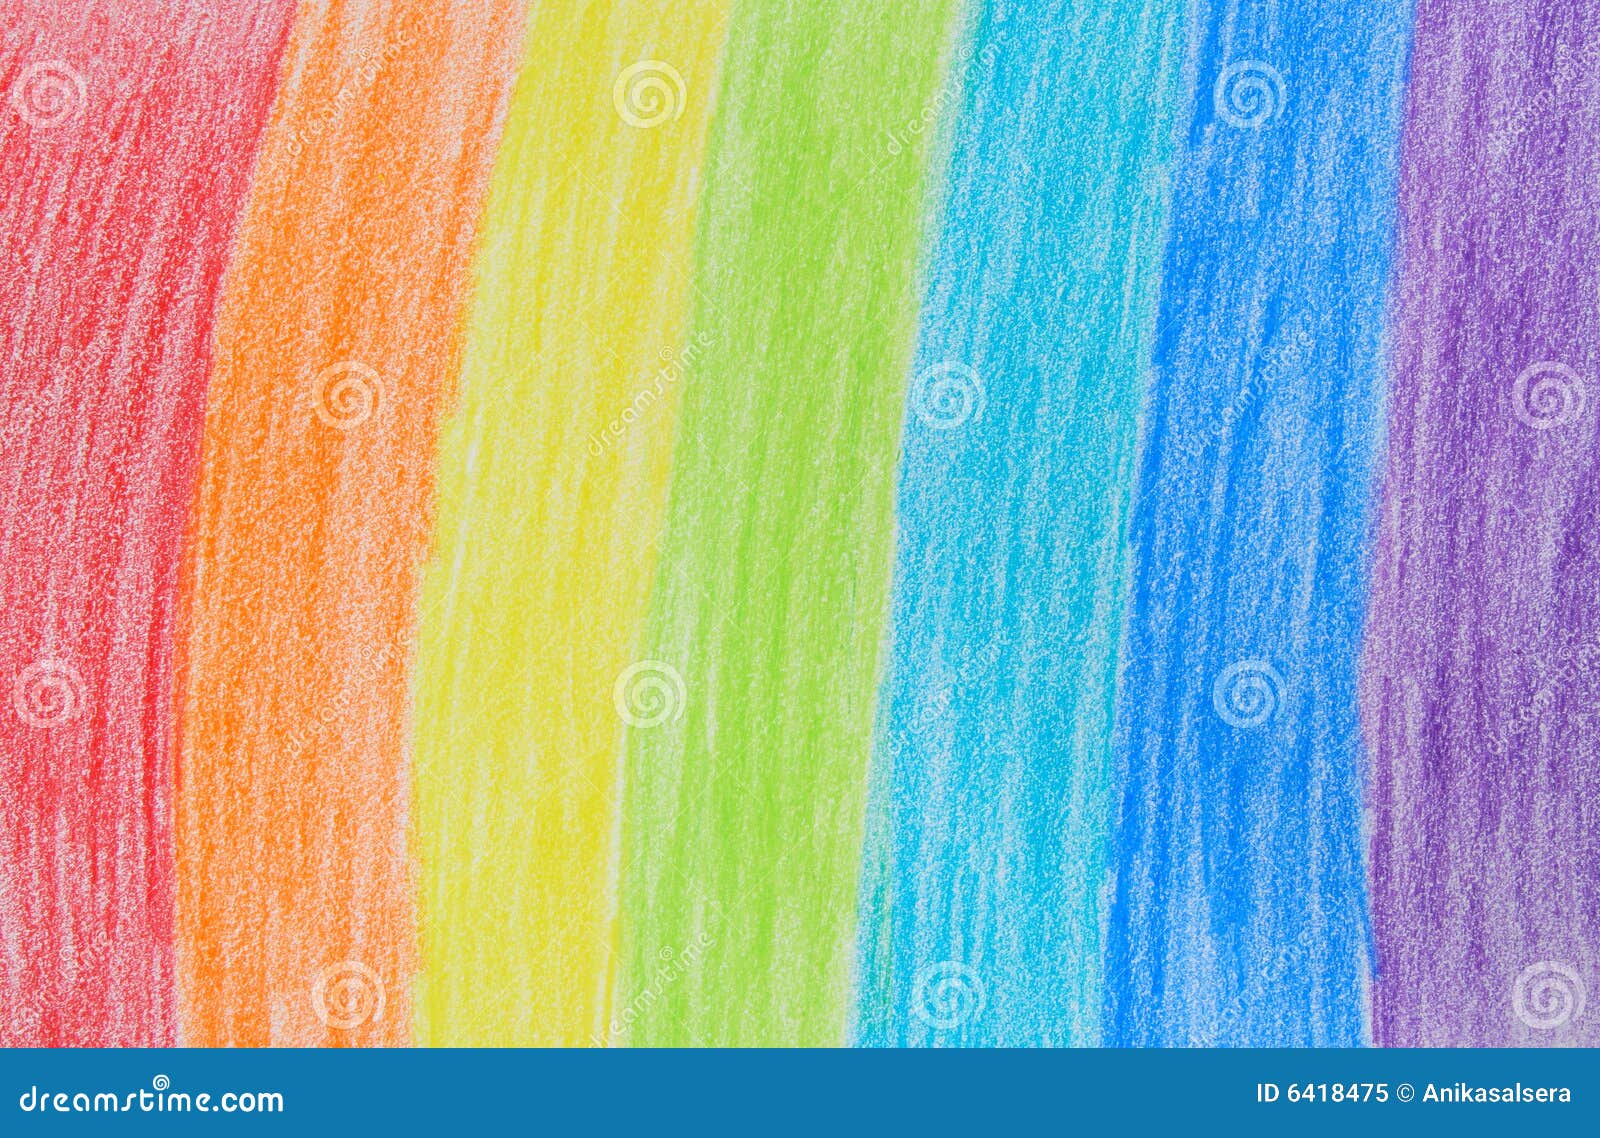 rainbow crayon drawing